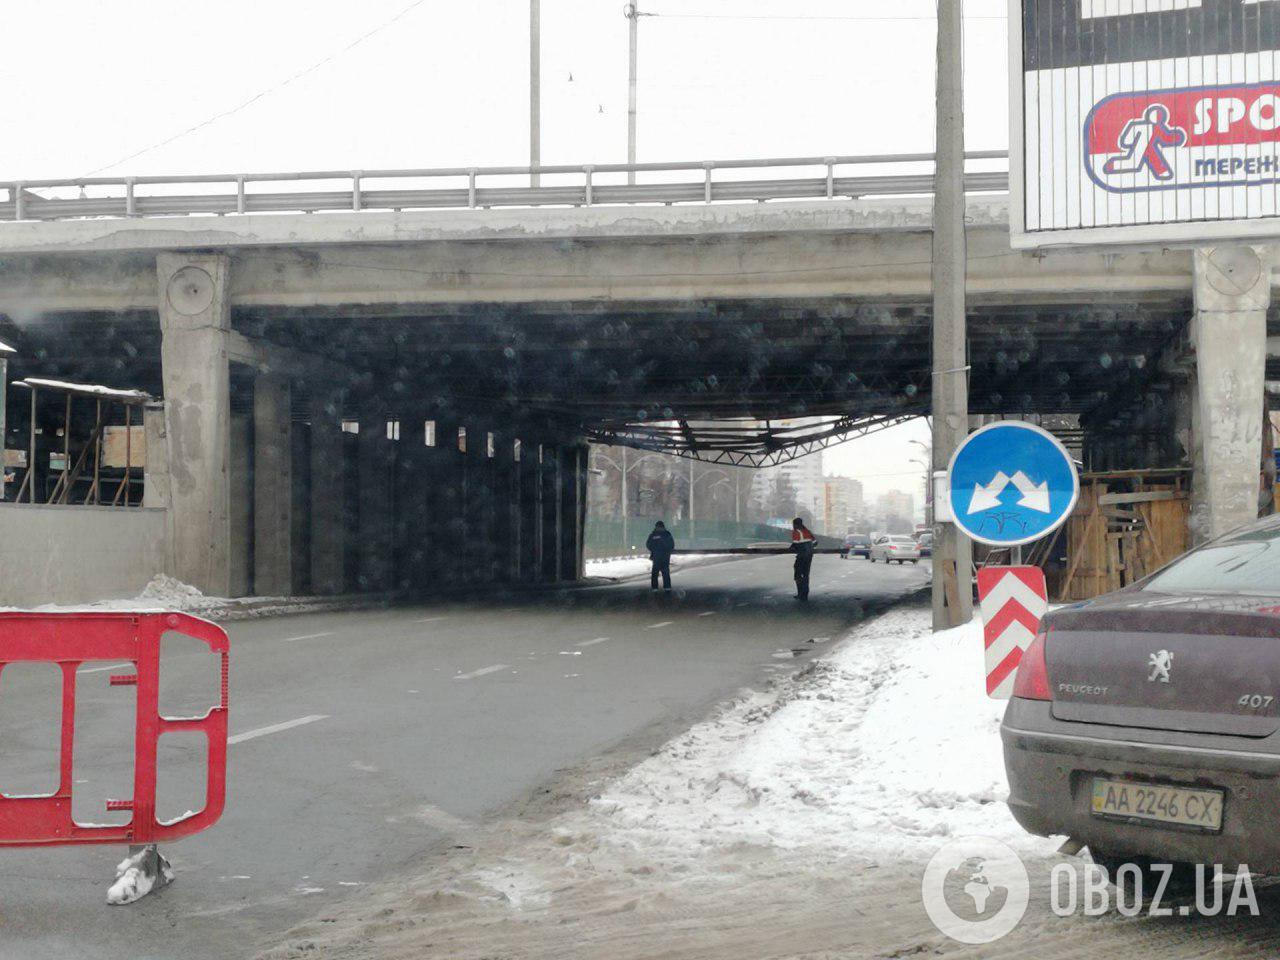 В Киеве провисла часть моста: все подробности